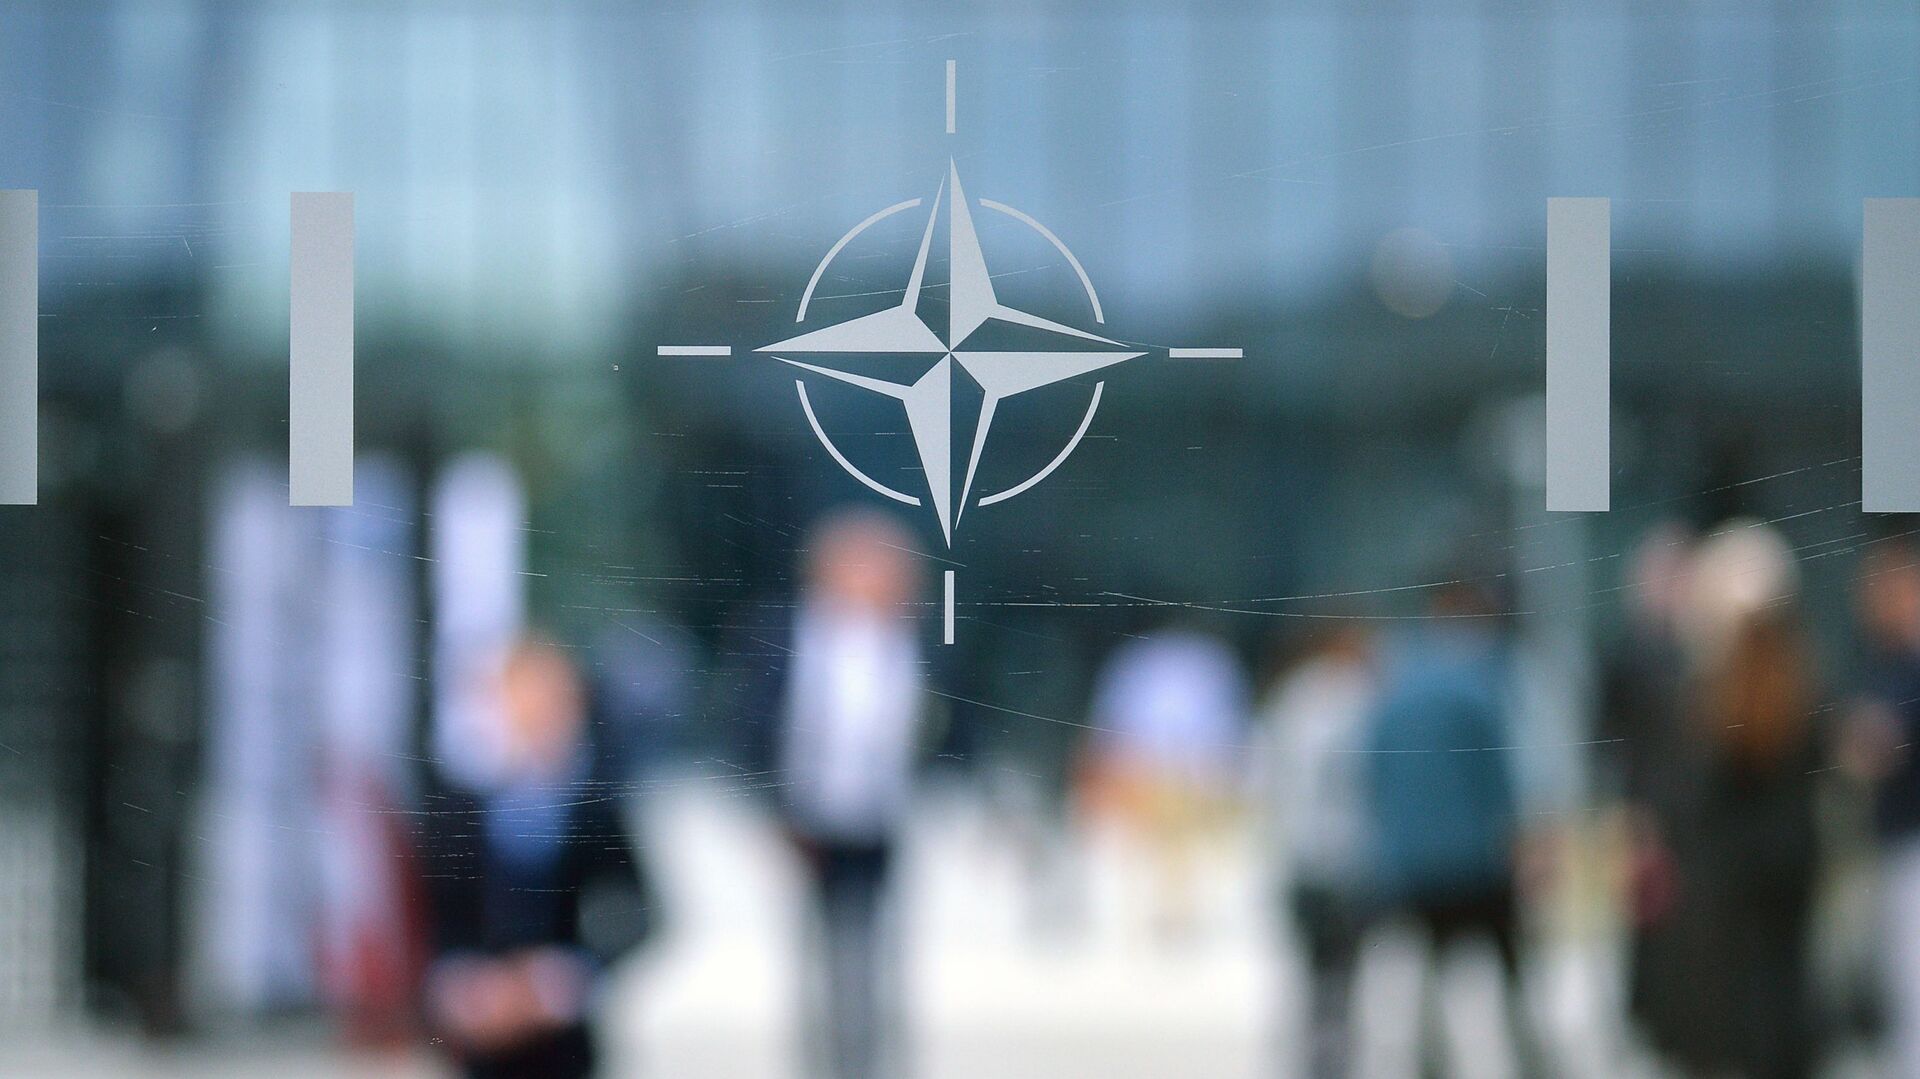 Эмблема Организации Североатлантического договора (НАТО) в Брюсселе.   - Sputnik Грузия, 1920, 17.12.2021